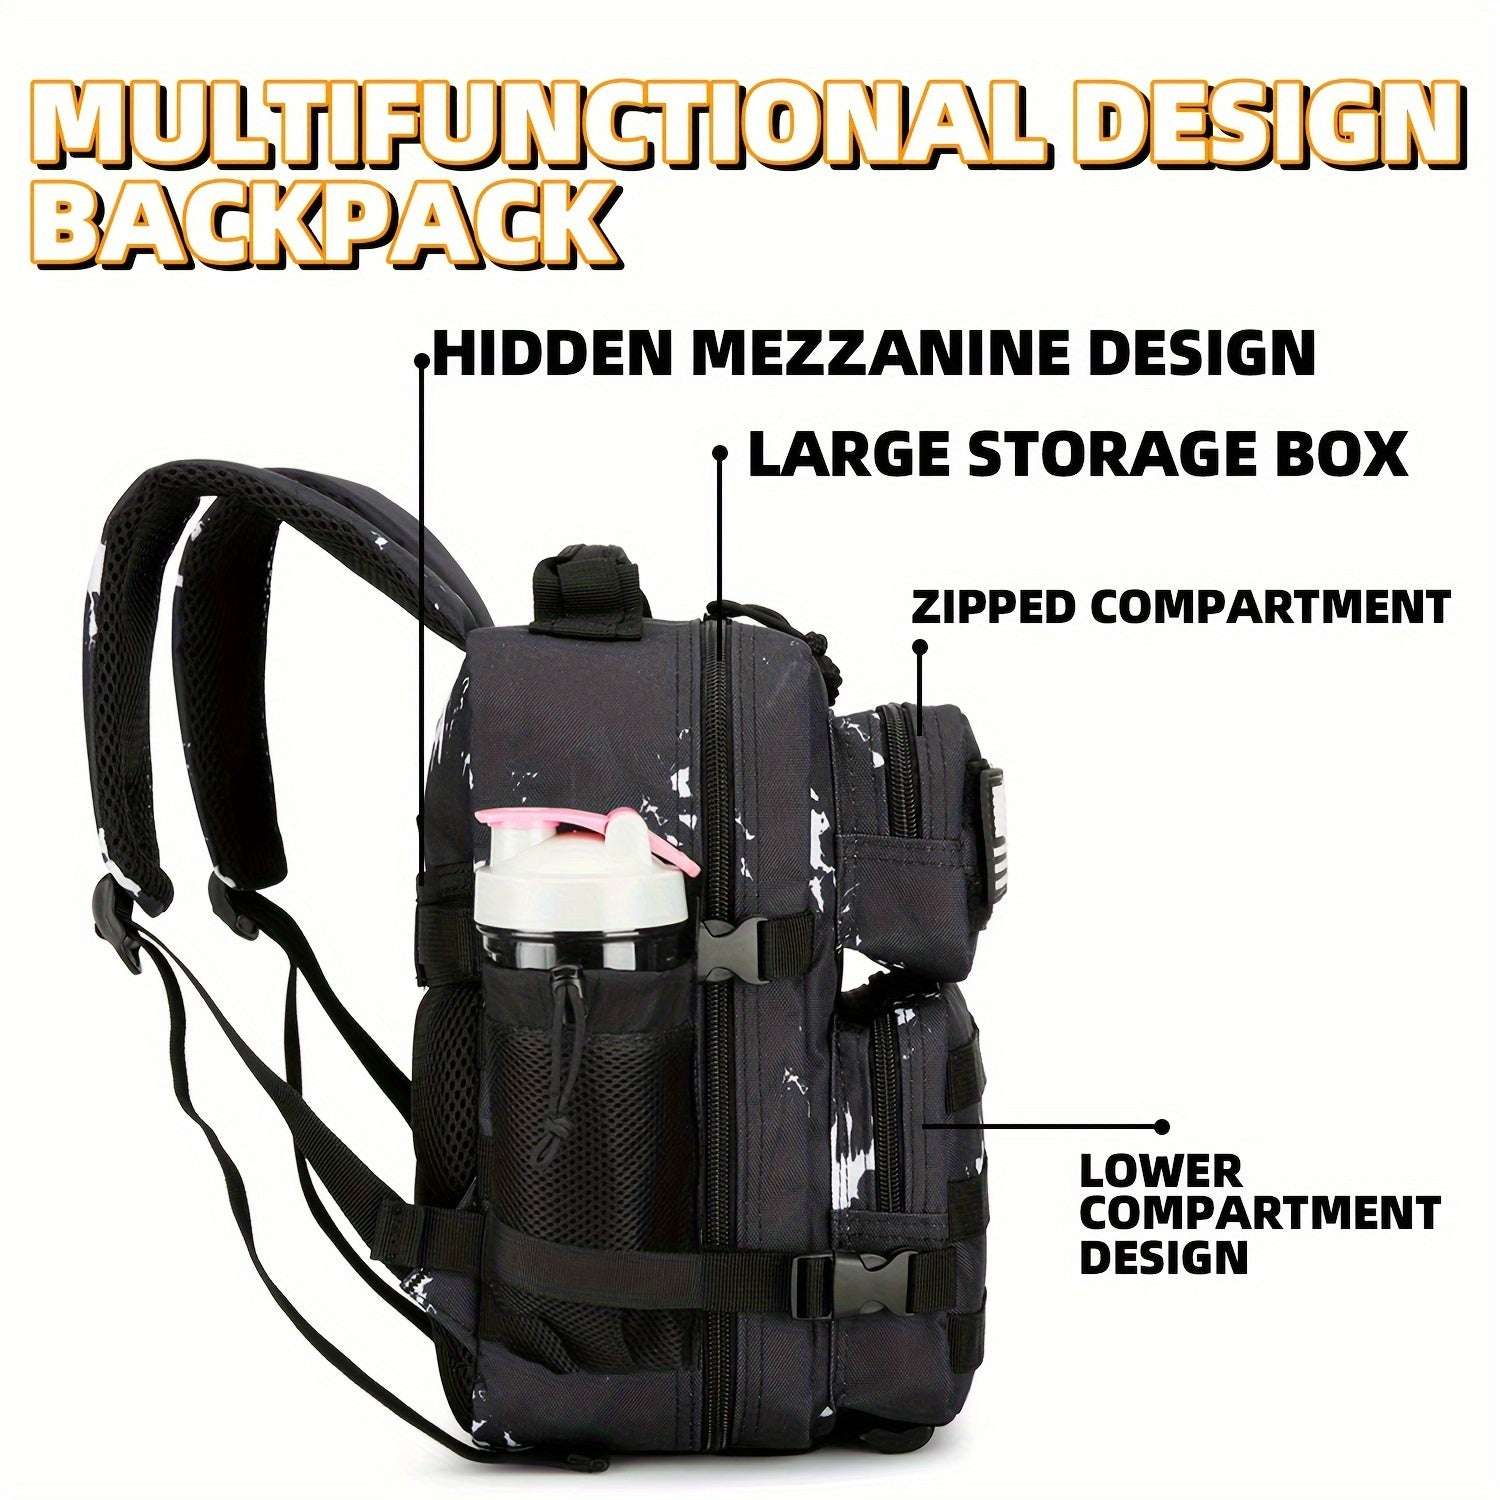 2.38gal Mini Backpack, Gym Sports Backpack, Hiking Travel Camping Backpack 40 Backpack OK•PhotoFineArt OK•PhotoFineArt